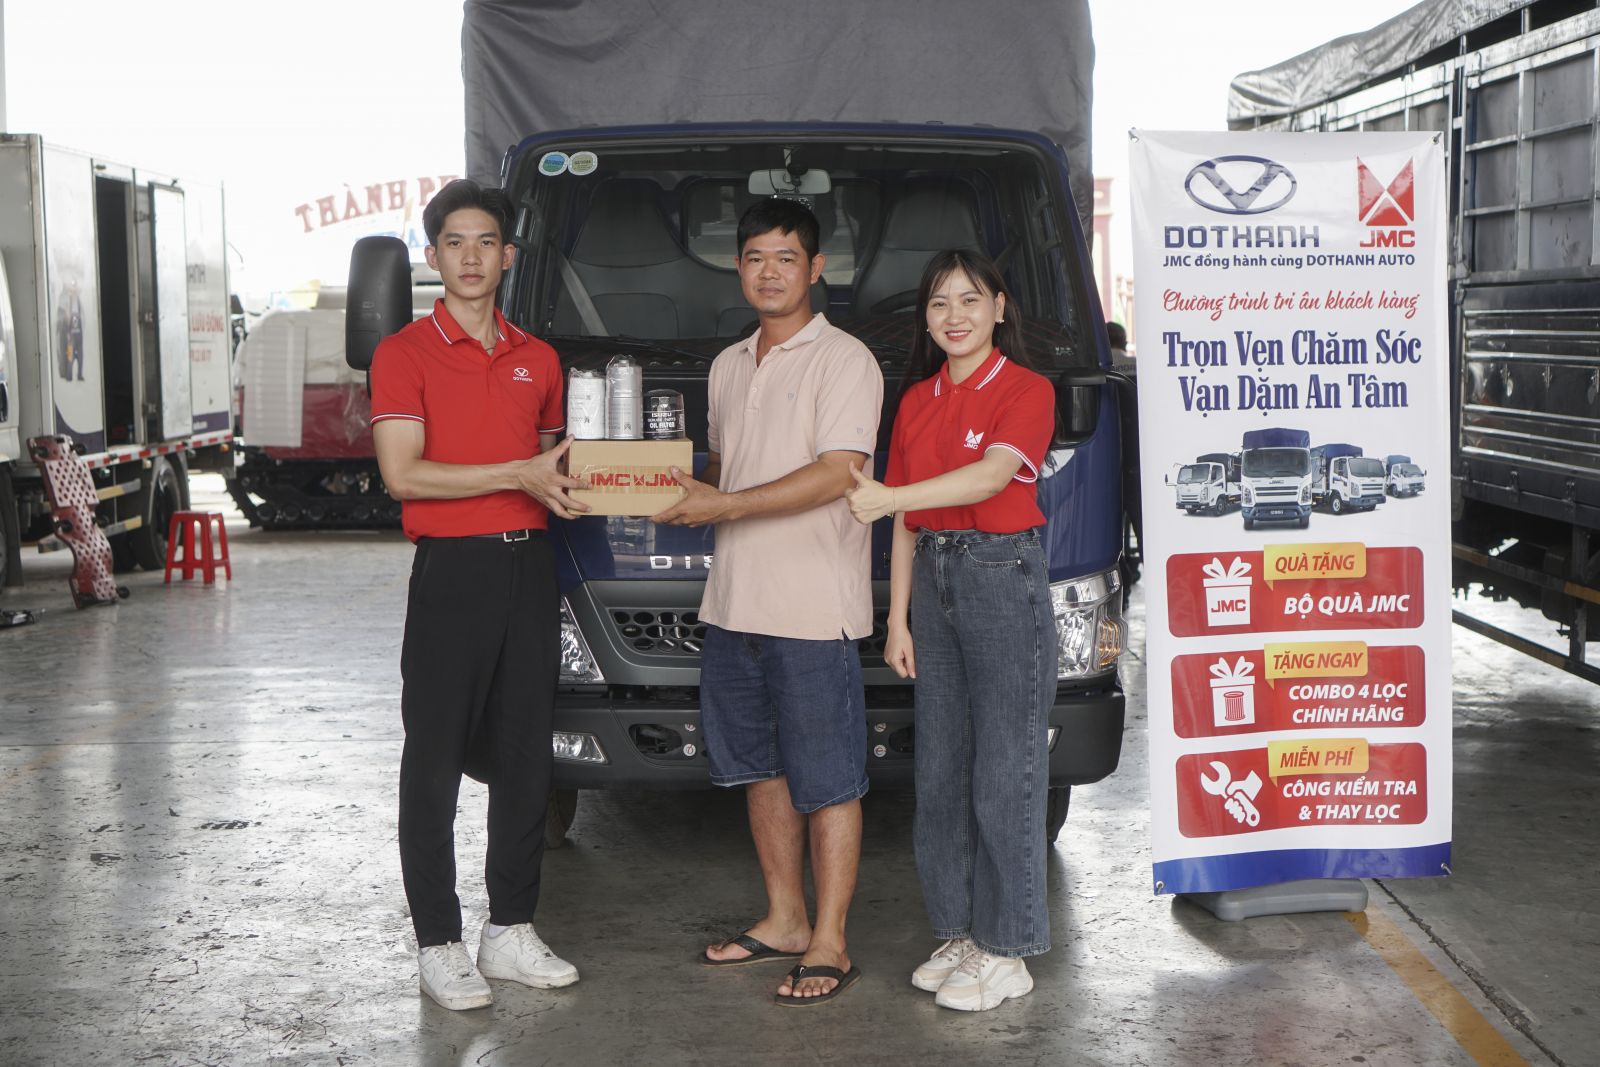 DoThanh Auto, JMC phối hợp tổ chức chương trình tri ân khách hàng “Trọn vẹn chăm sóc - Vạn dặm an tâm” tại Đô Thành Đồng Nai